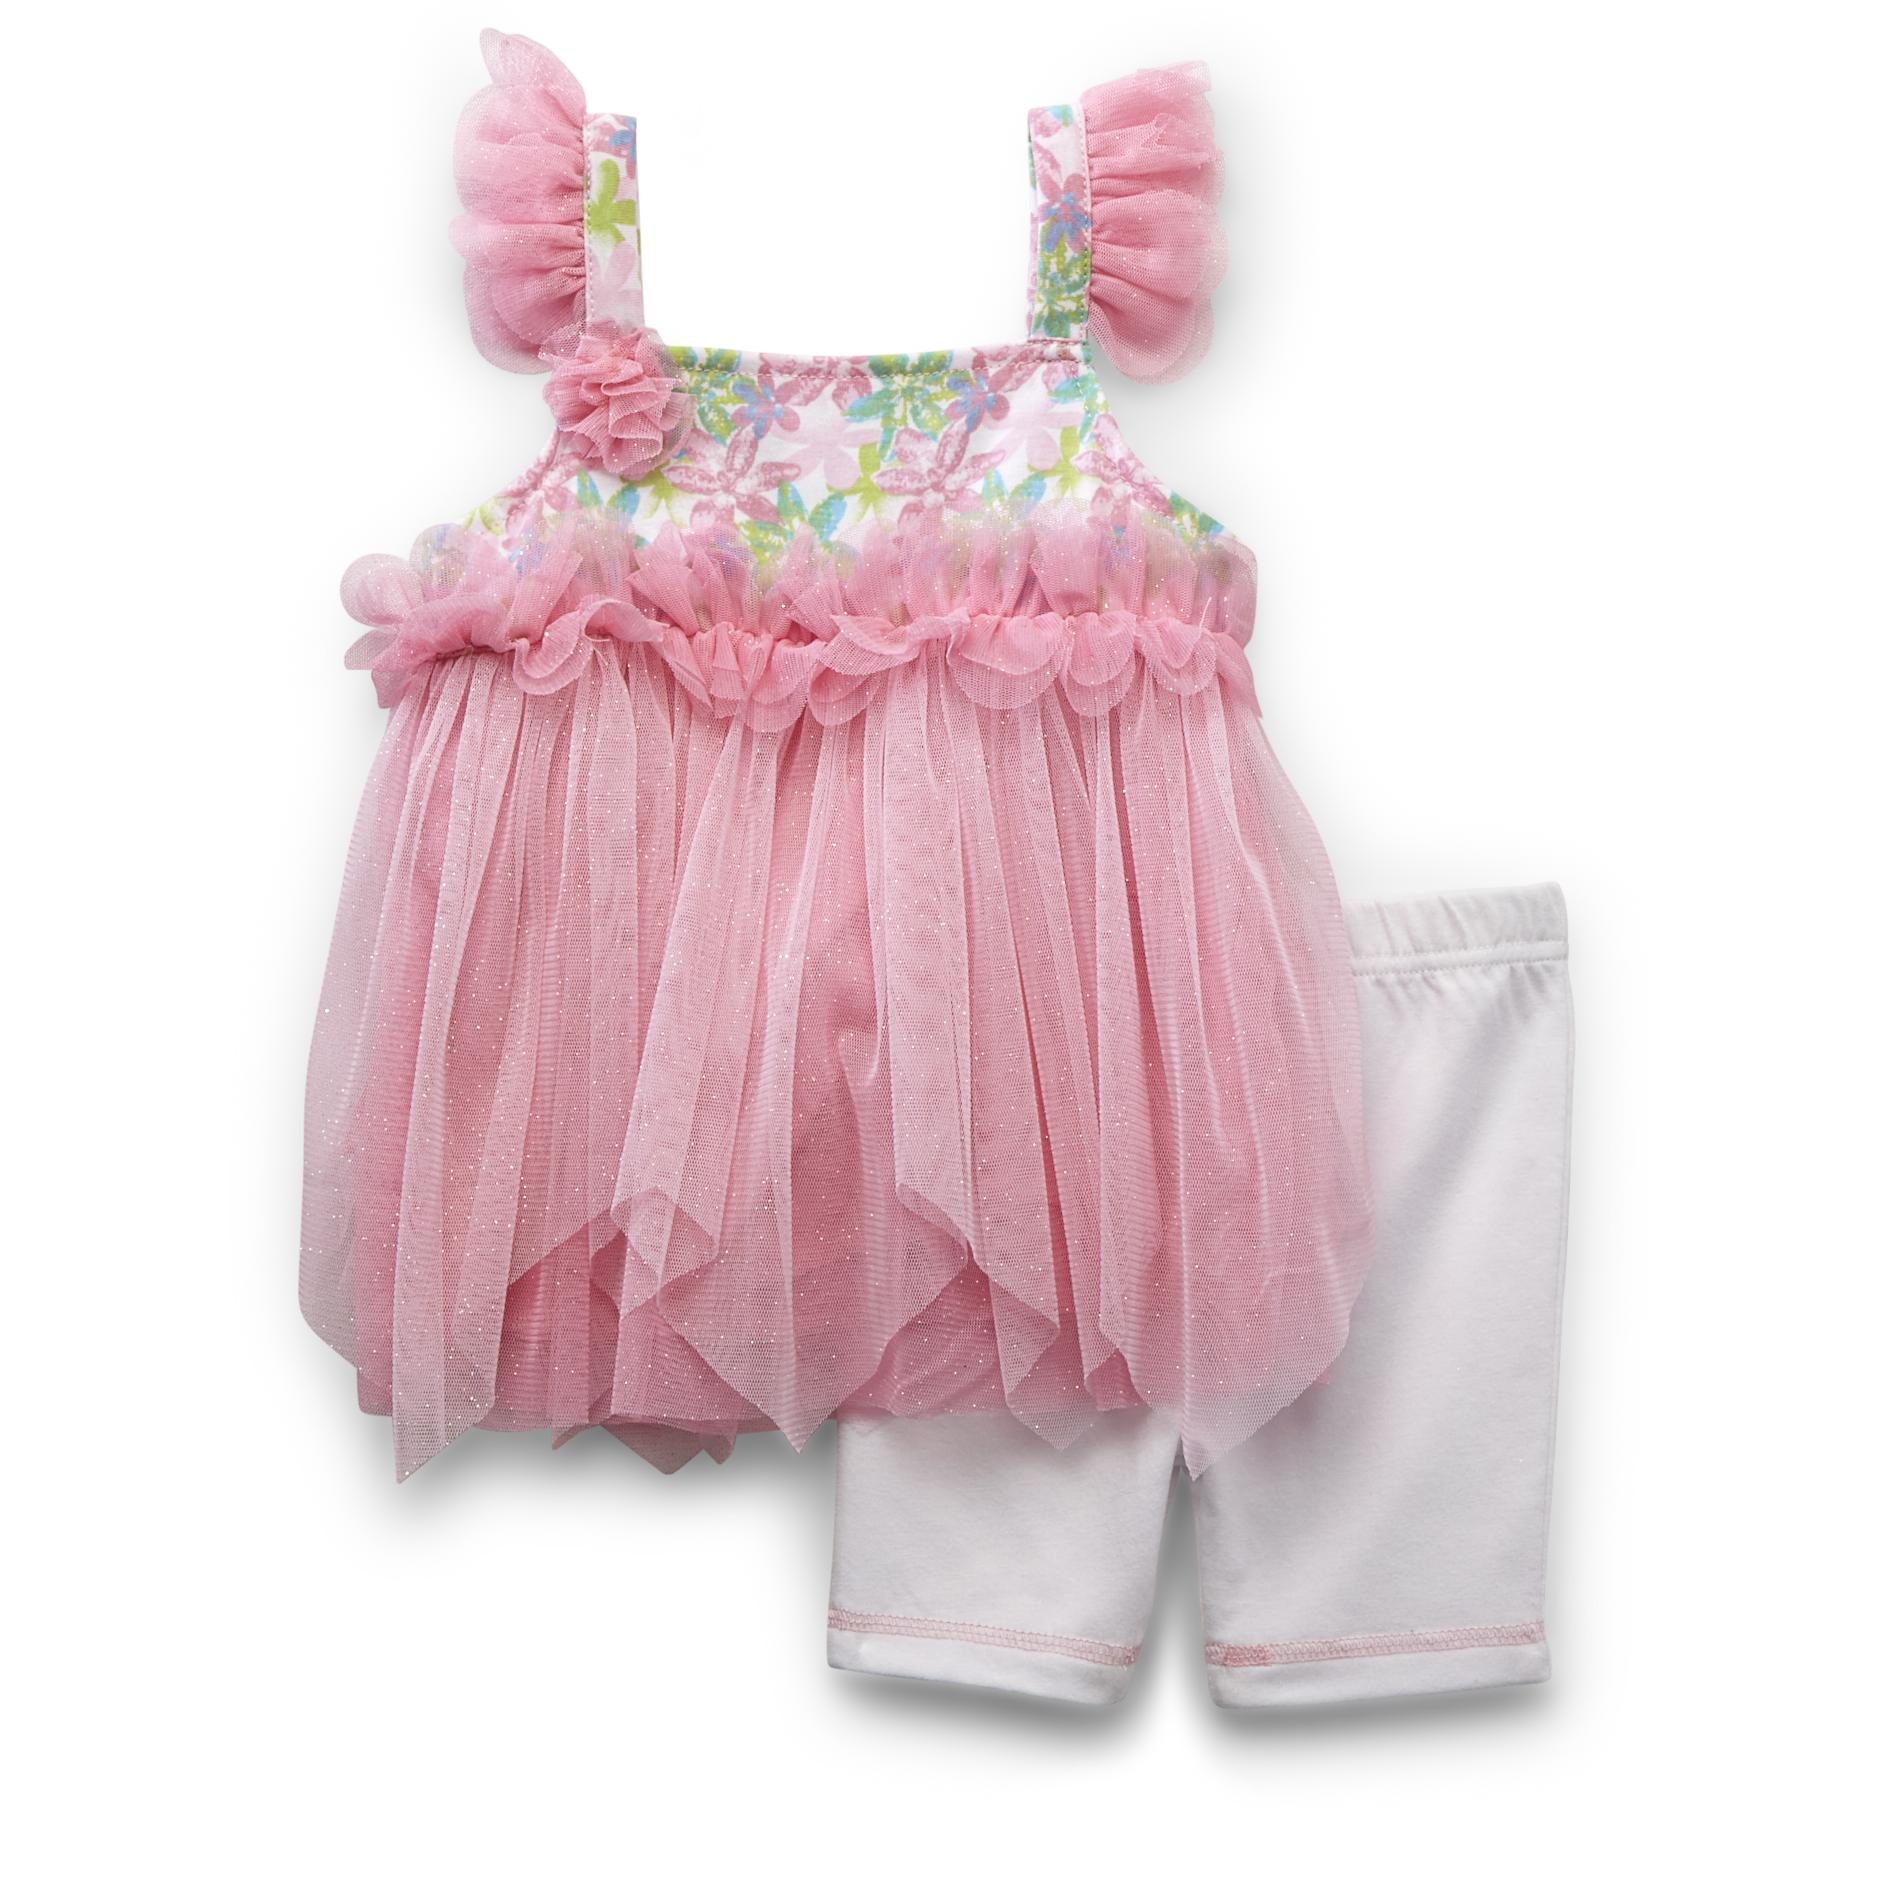 WonderKids Infant & Toddler Girl's Tutu Dress & Knit Shorts - Floral